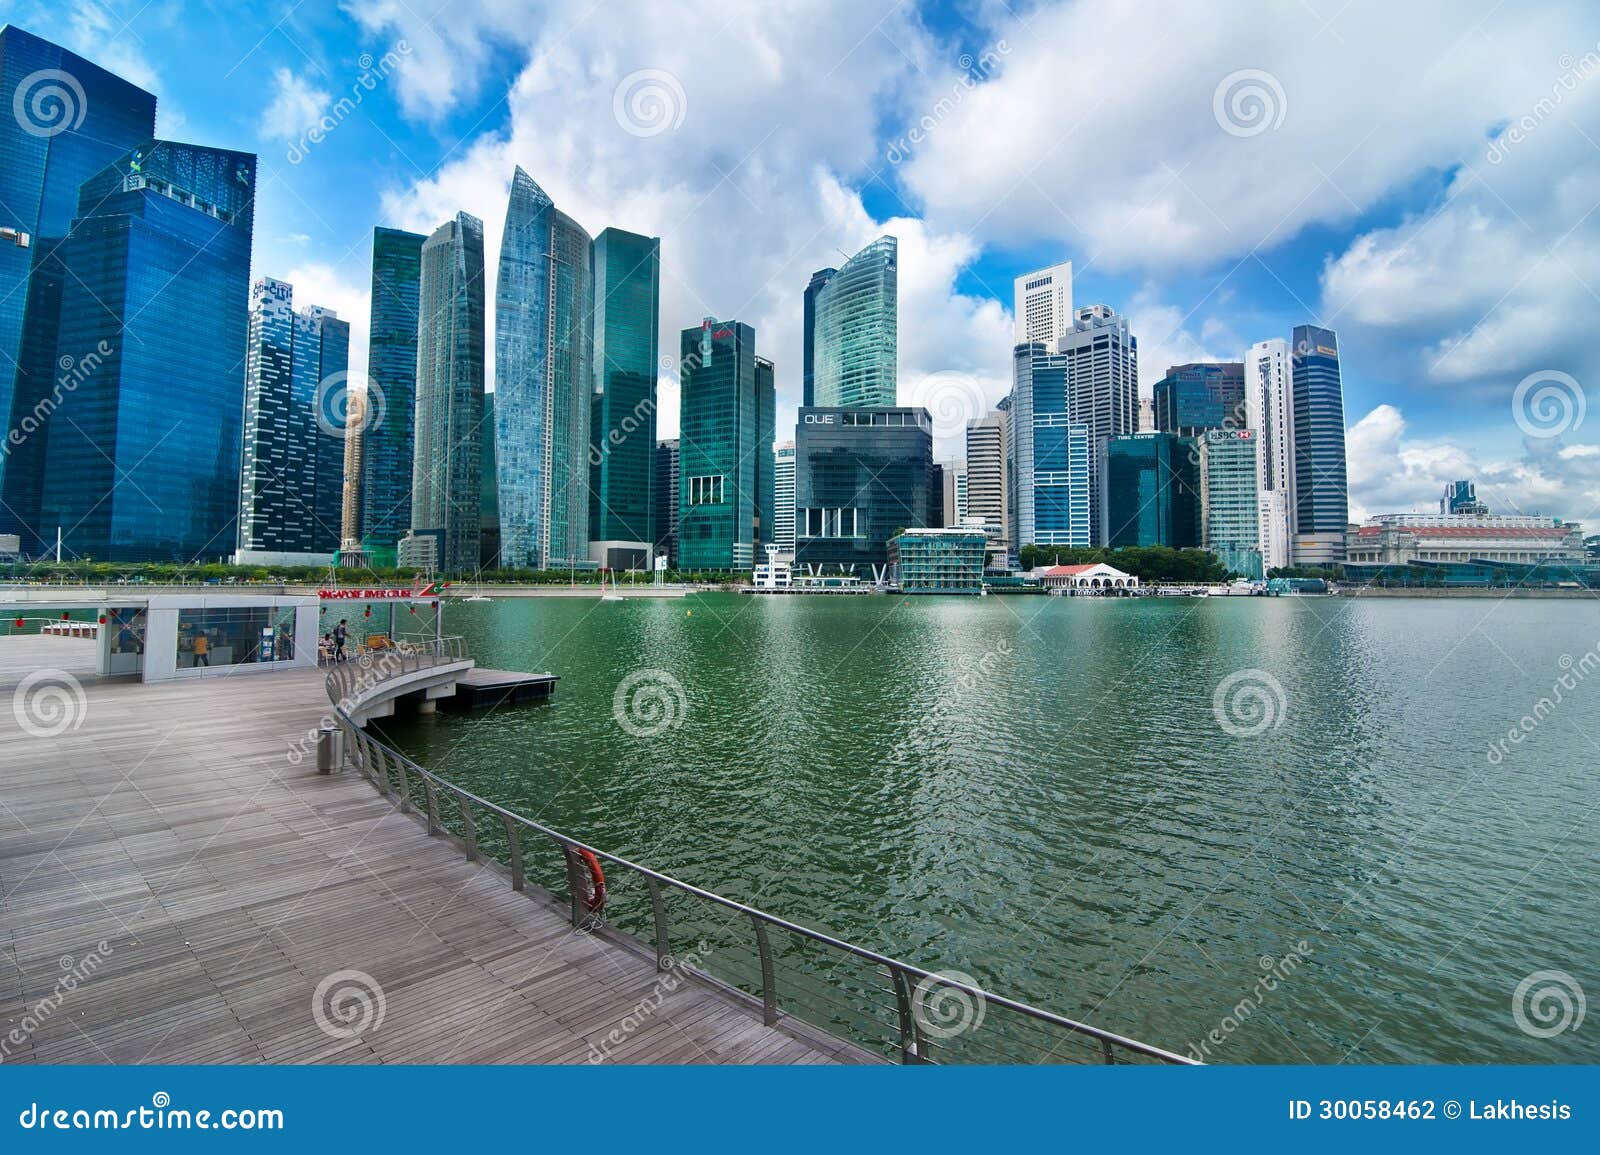 SINGAPORE - FEBRUARY 26: Urban landscape of Singapore. Skyline and ...